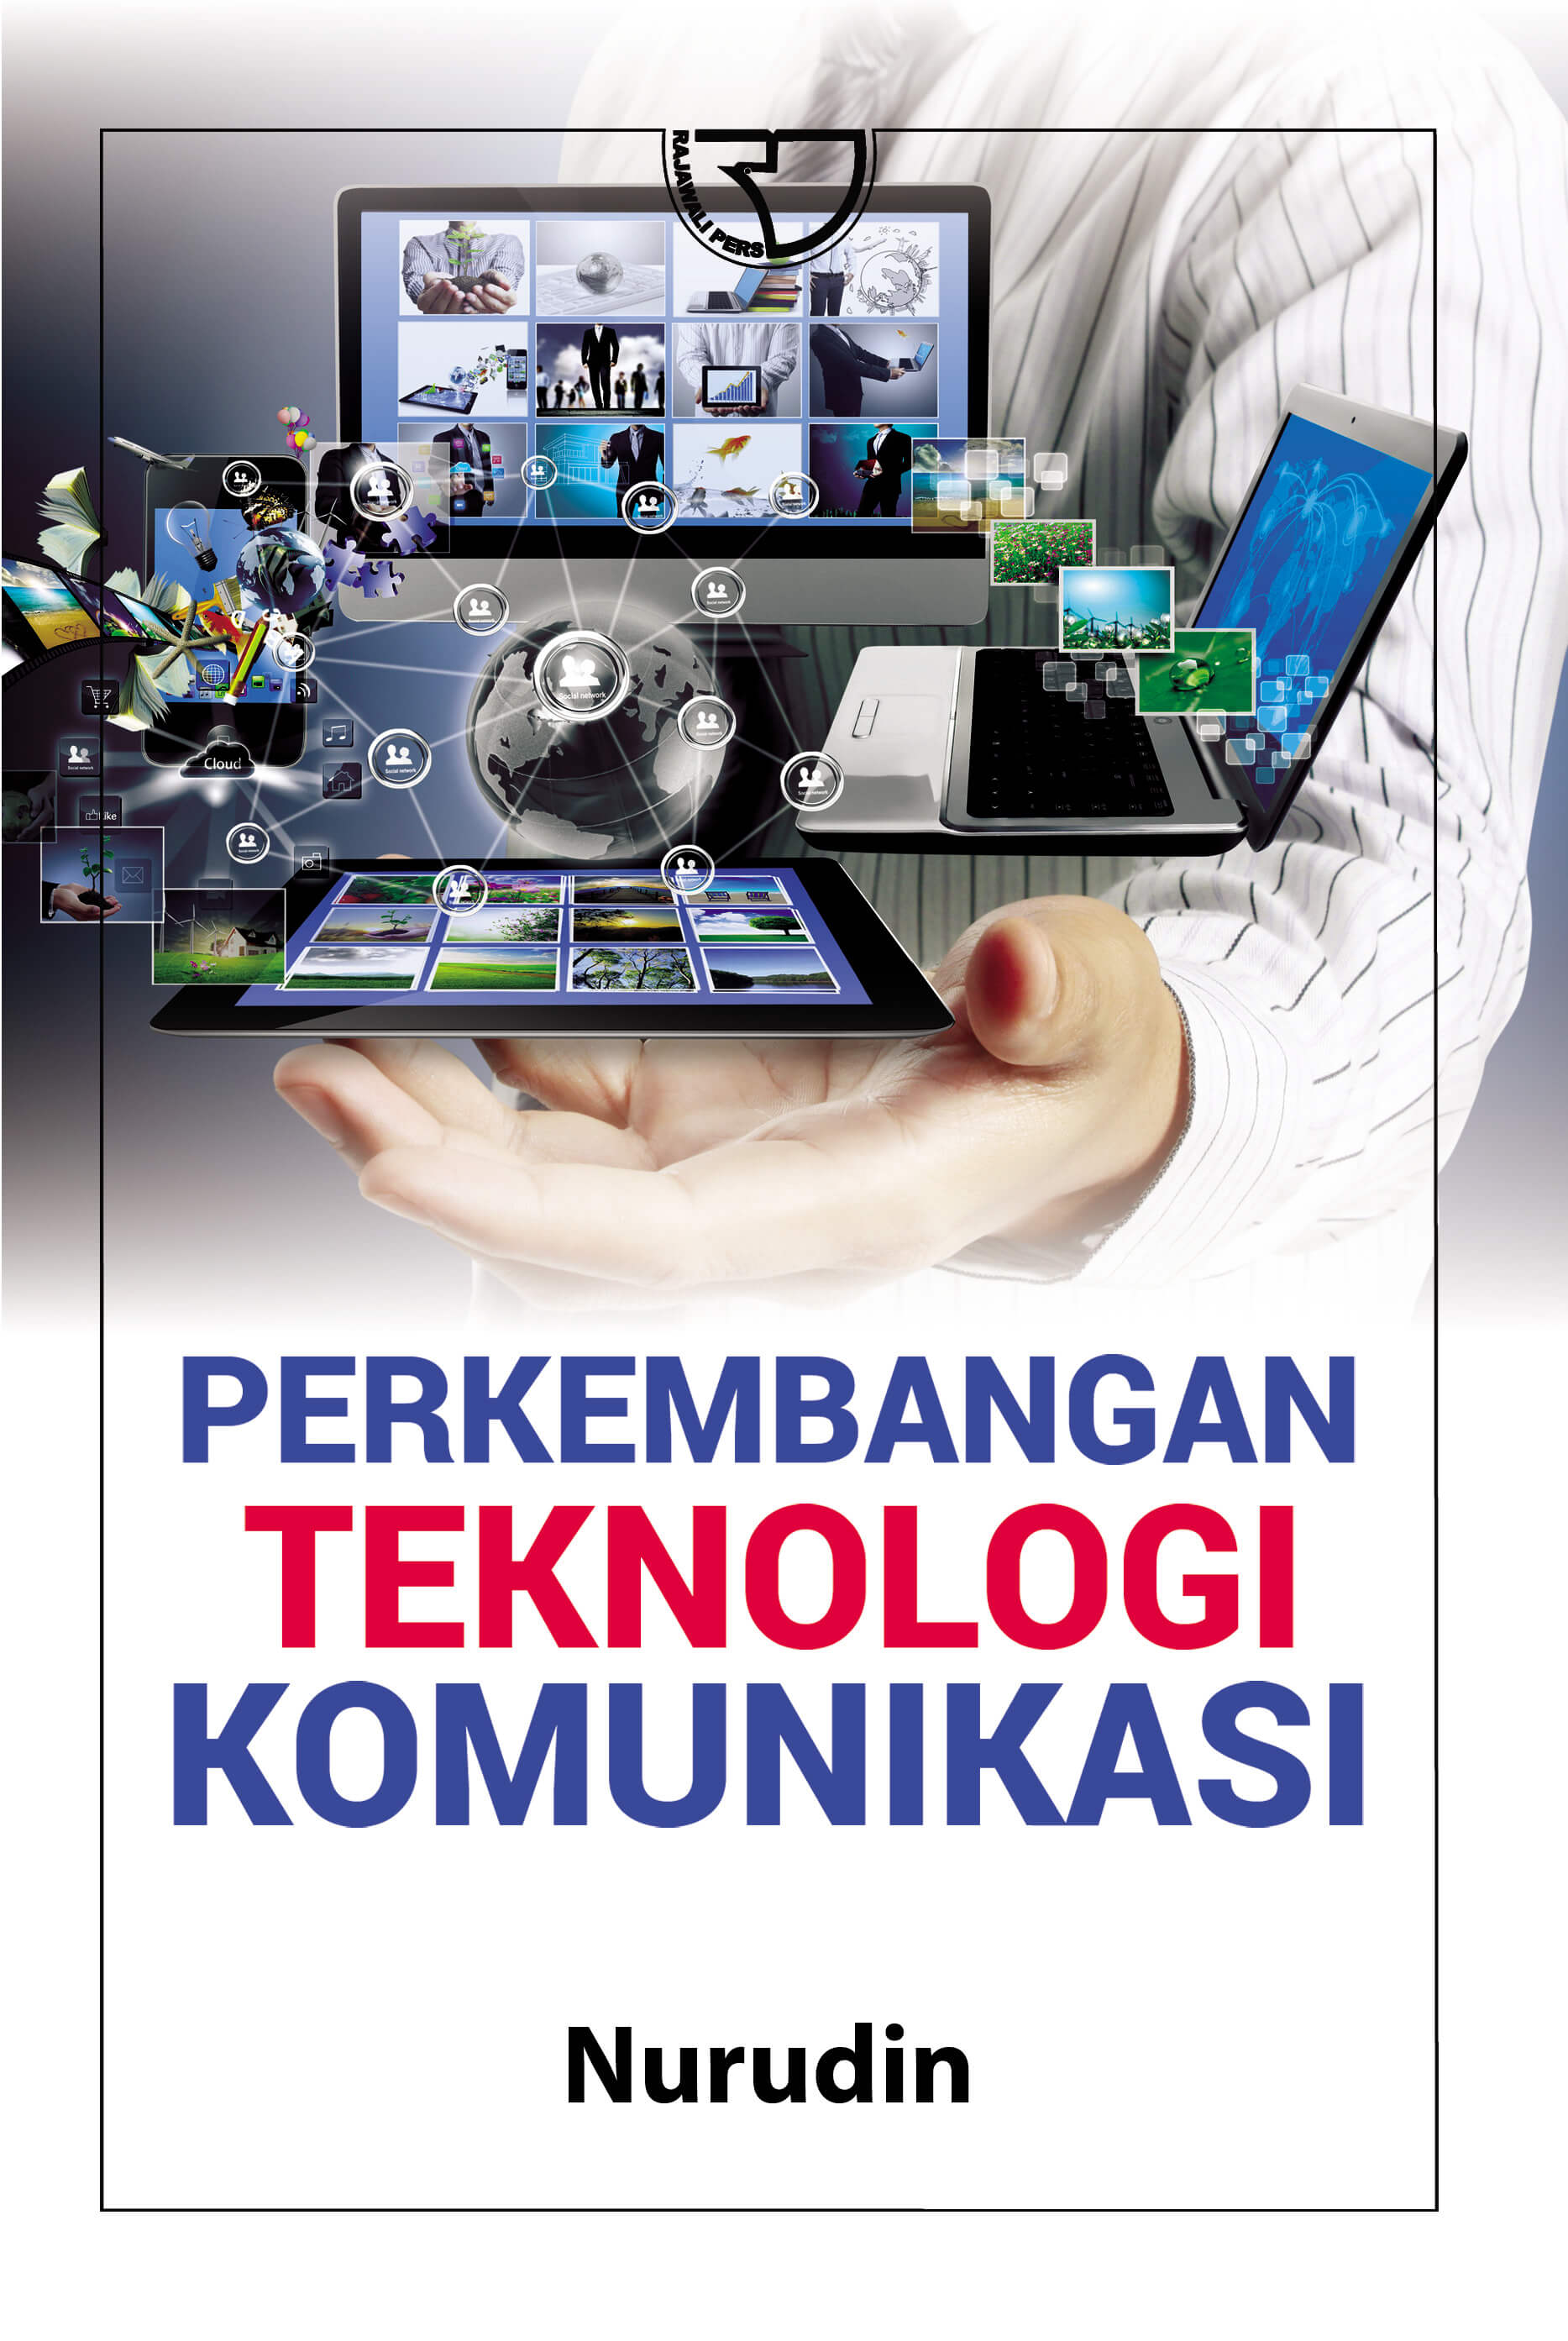 Poster Tentang Teknologi